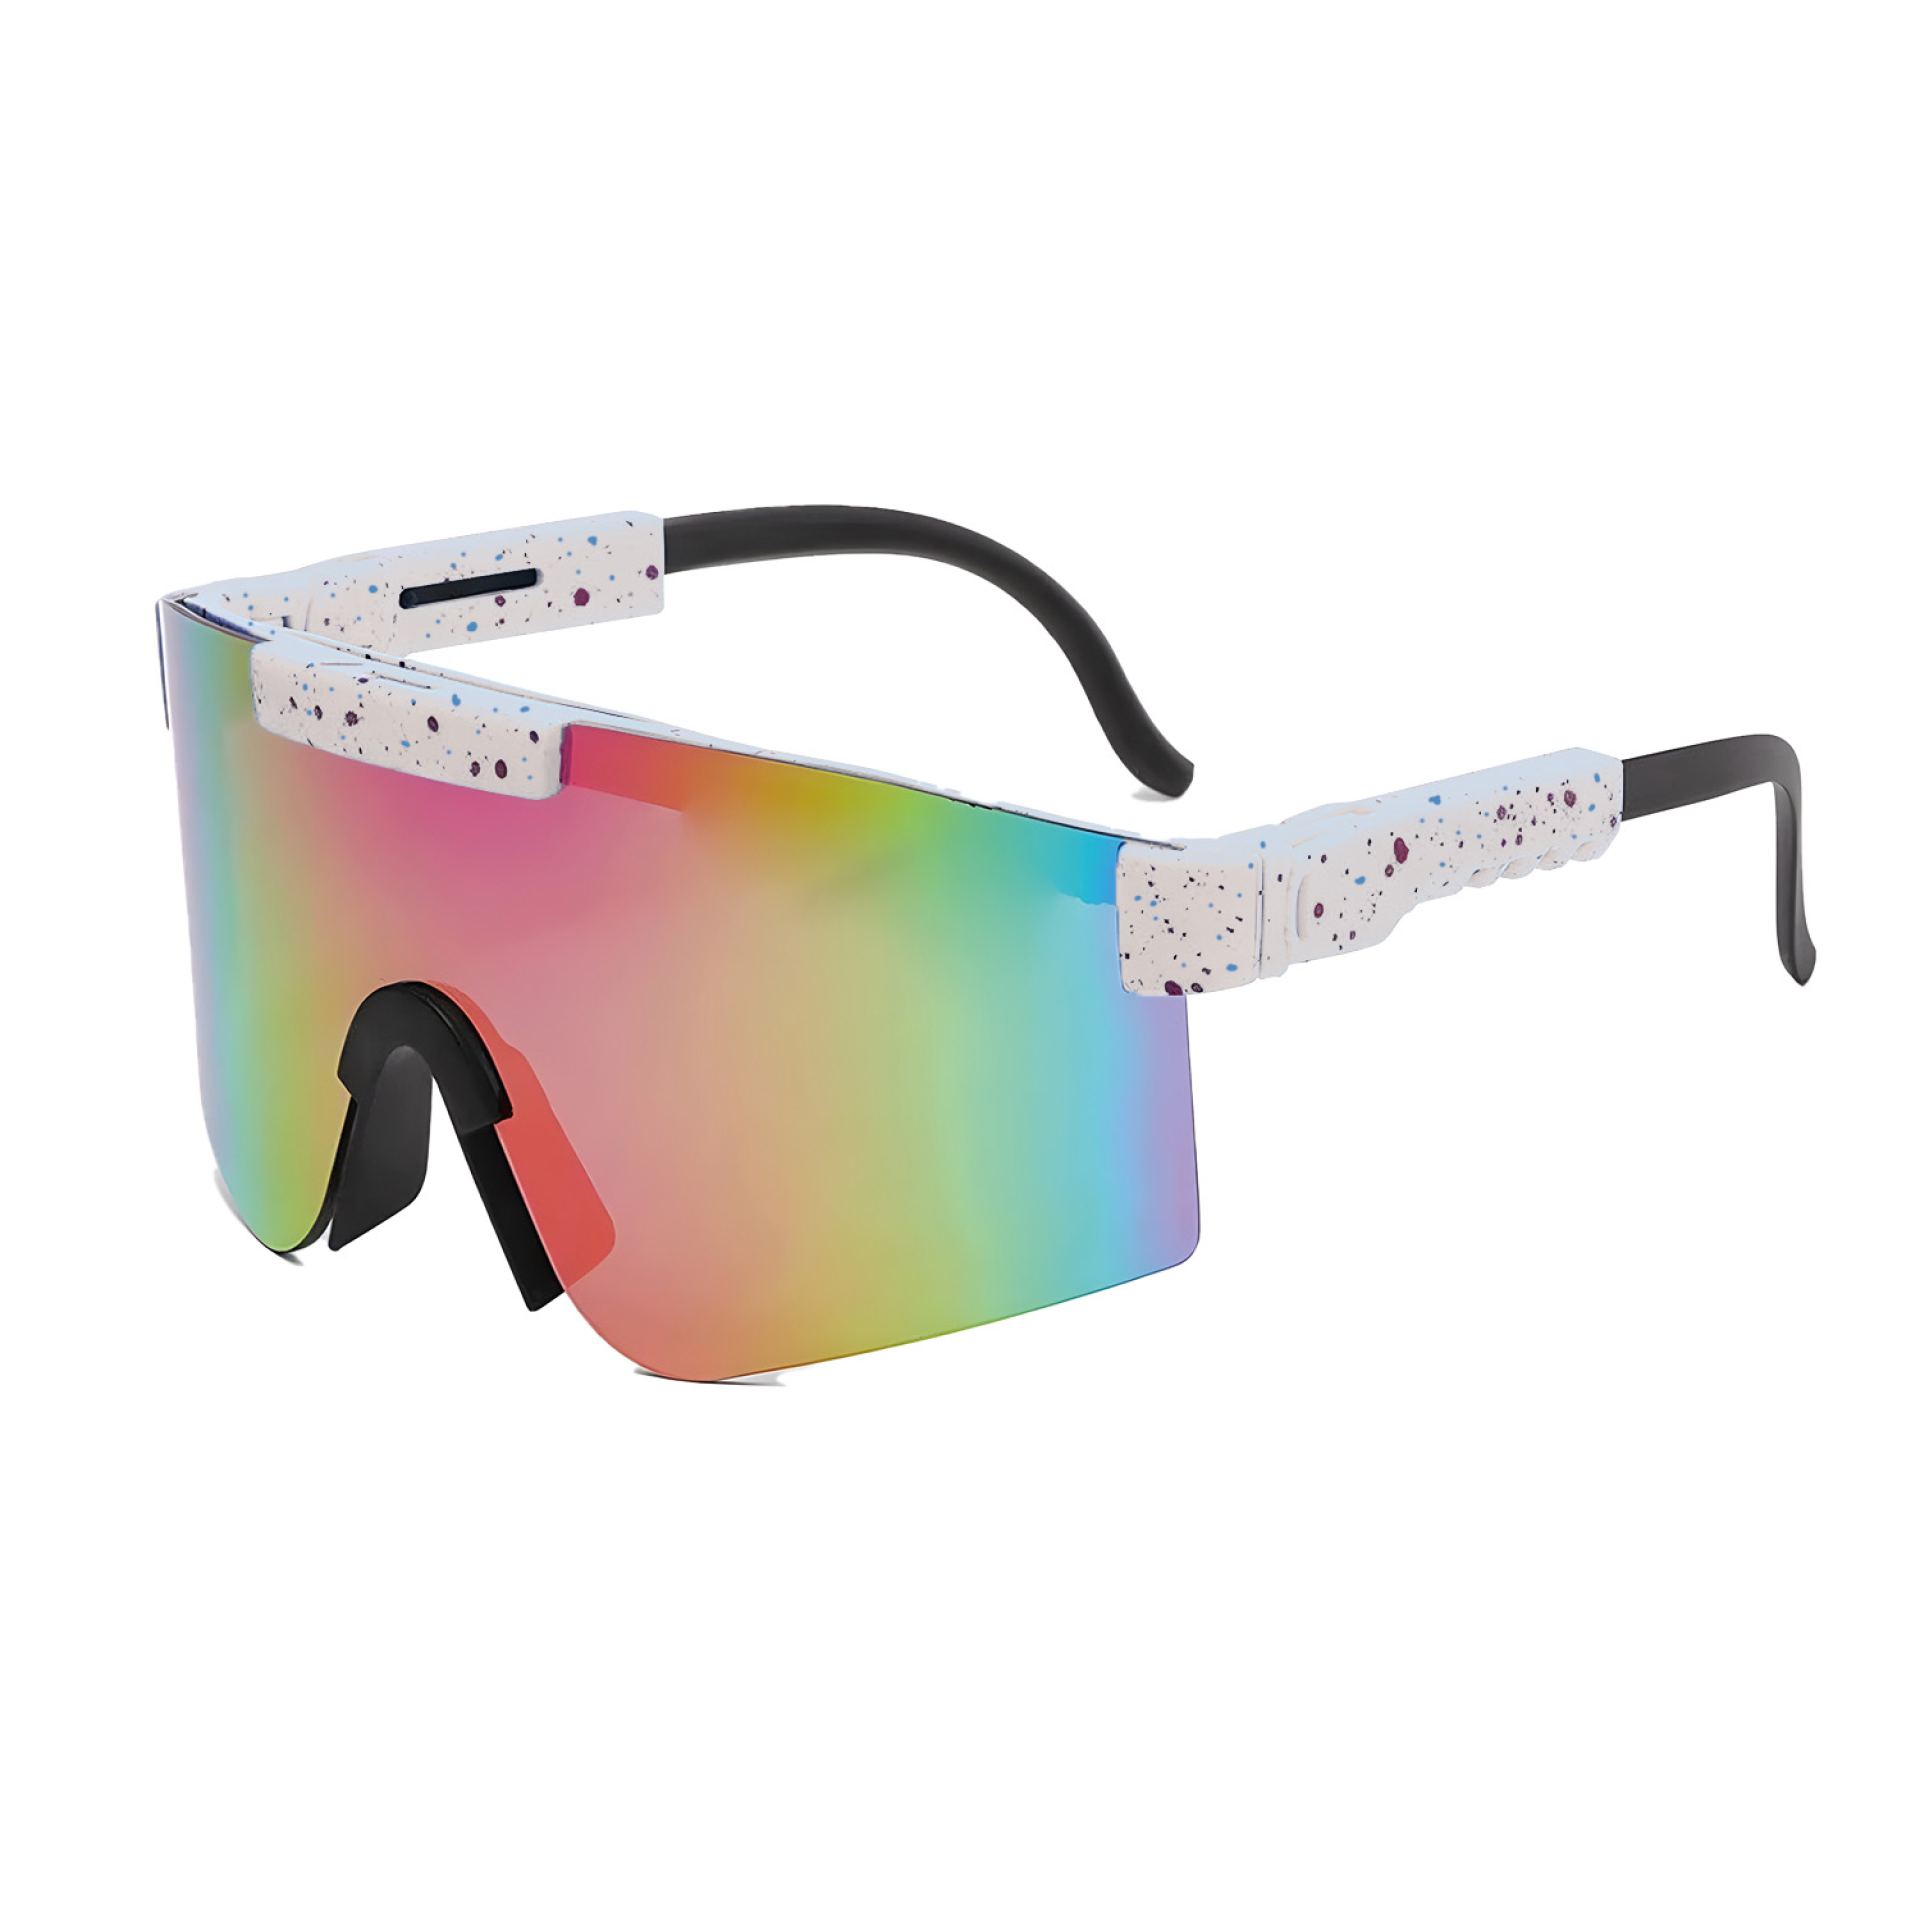 Rave bril sport zonnebril wit/rood kopen